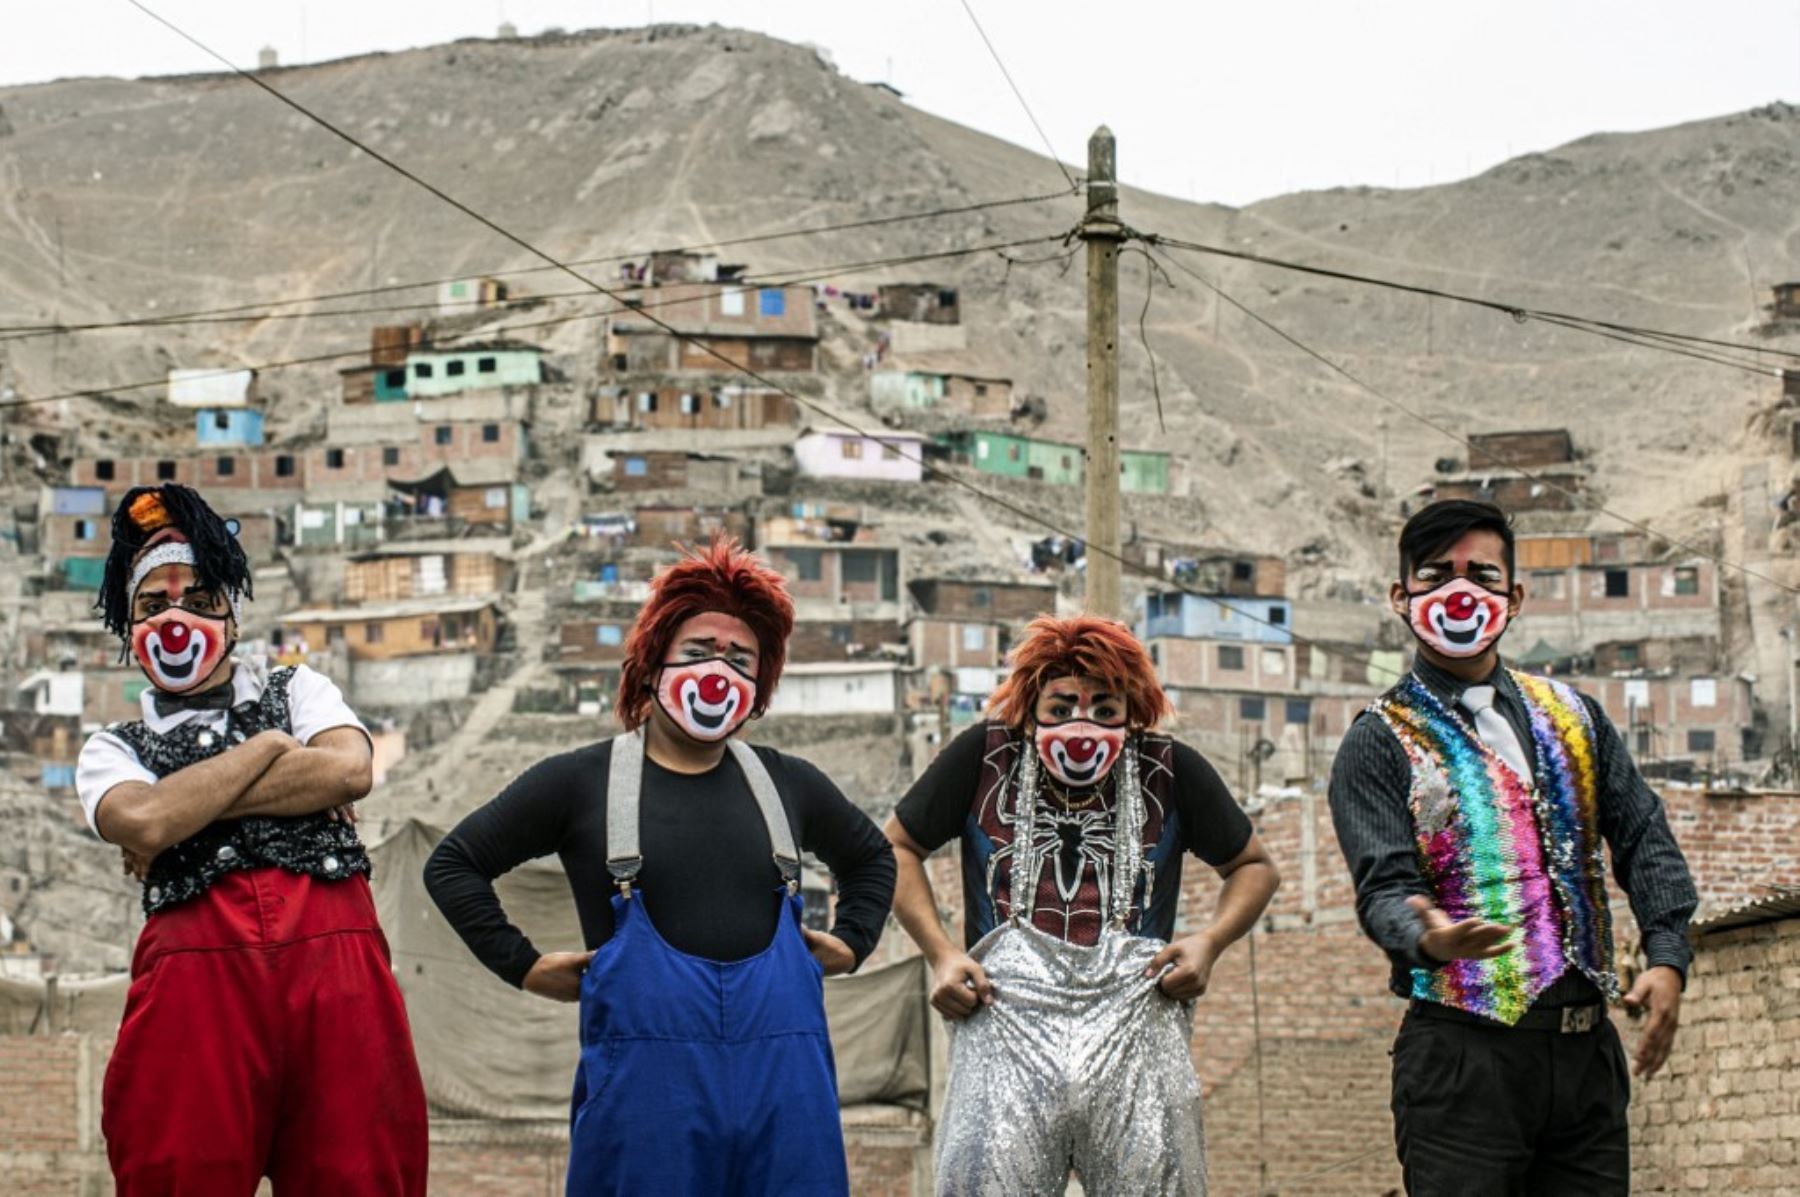 Los payasos con máscaras se presentan en el distrito de Puente Piedra, en las afueras del norte de Lima, durante la pandemia covid-19. - Debido a la pandemia de coronavirus, los circos en Perú permanecen cerrados, lo que lleva a este grupo de payasos que viajan en su circo mototaxi a actuar en las calles de Lima. 

Foto: AFP